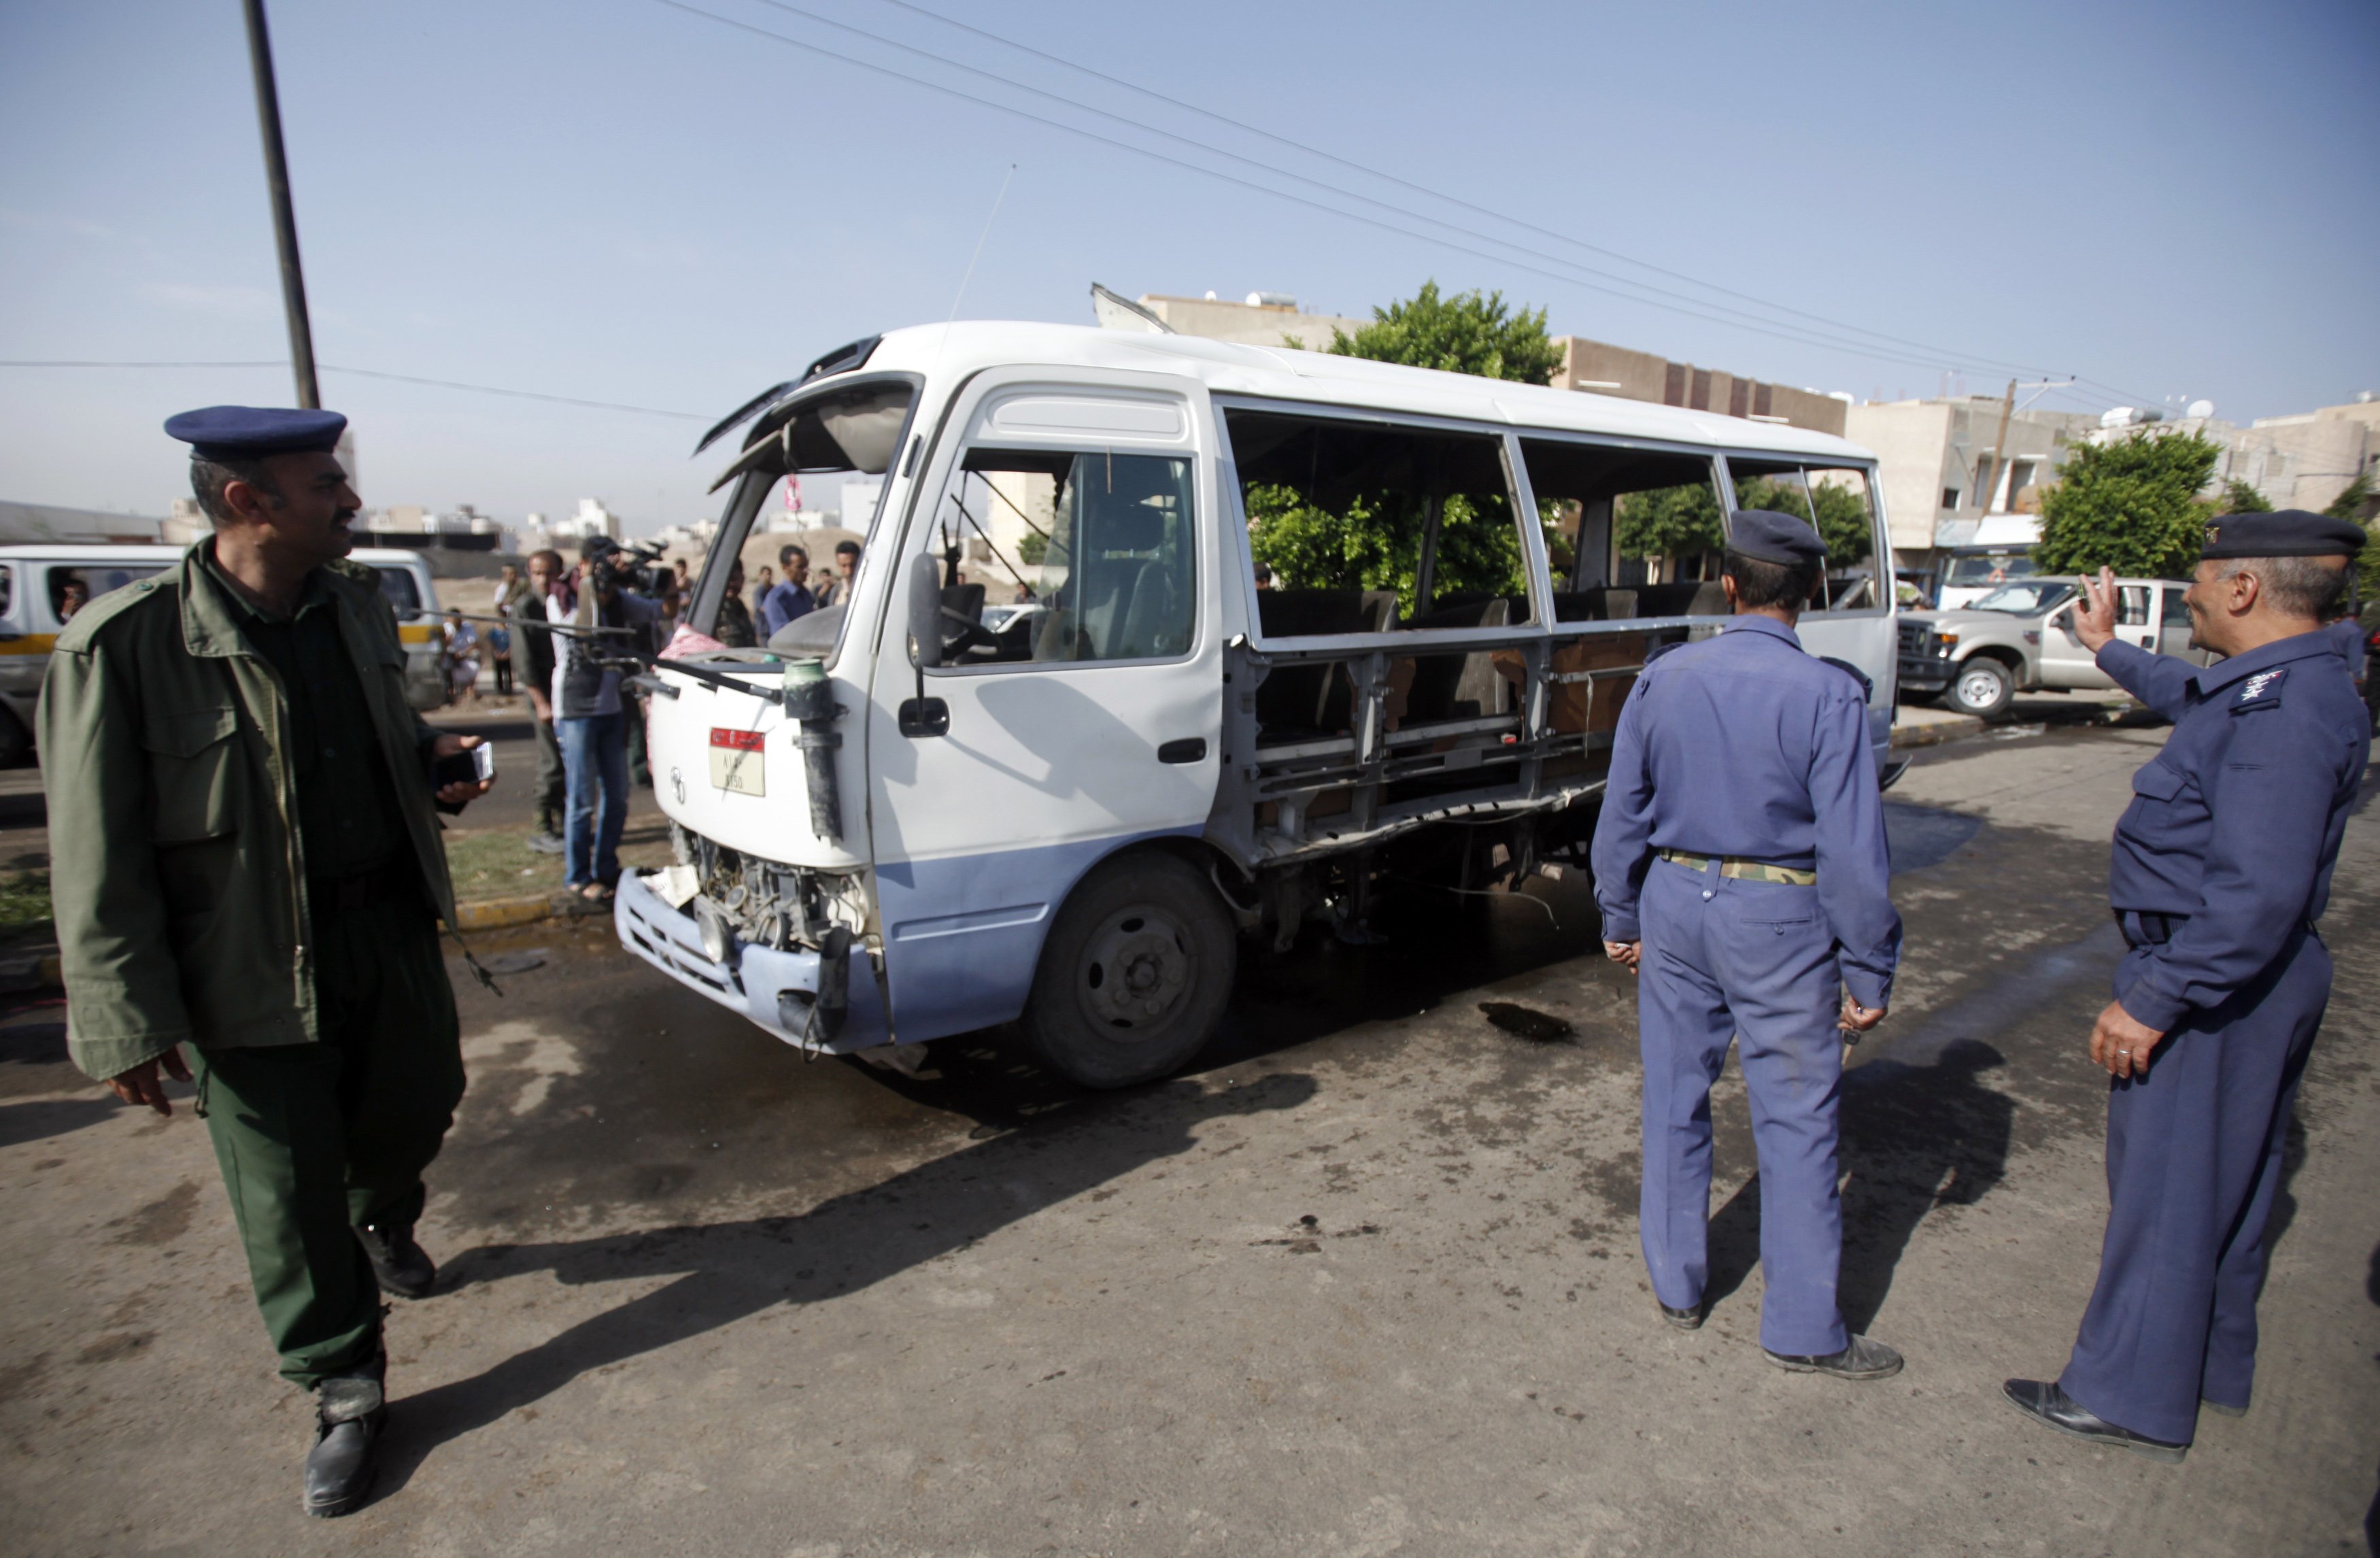 Φωτογραφία από προηγούμενη βομβιστική επίθεση σε στρατιωτικό λεωφορείο στις 25 Αυγούστου. Πηγή: Reuters